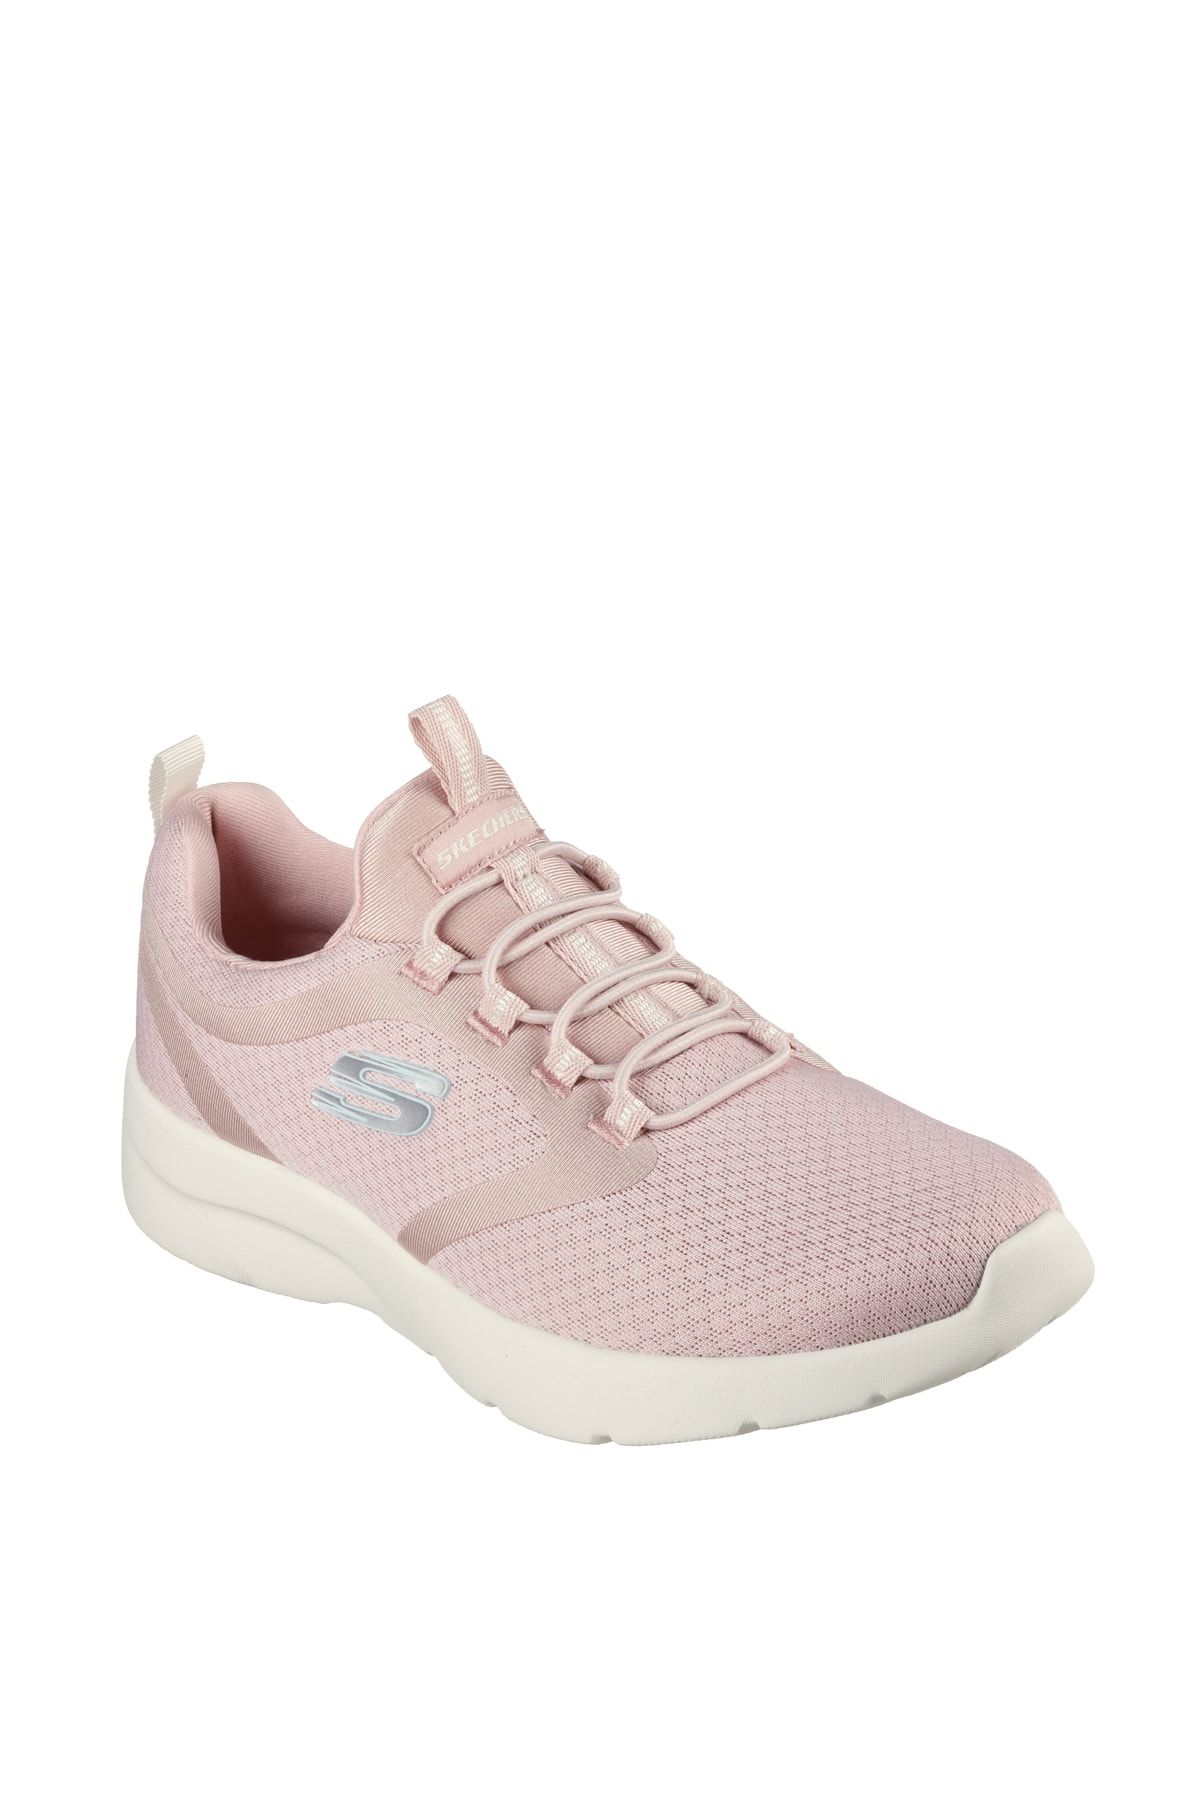 Skechers Sneaker Kadın / Kız pink